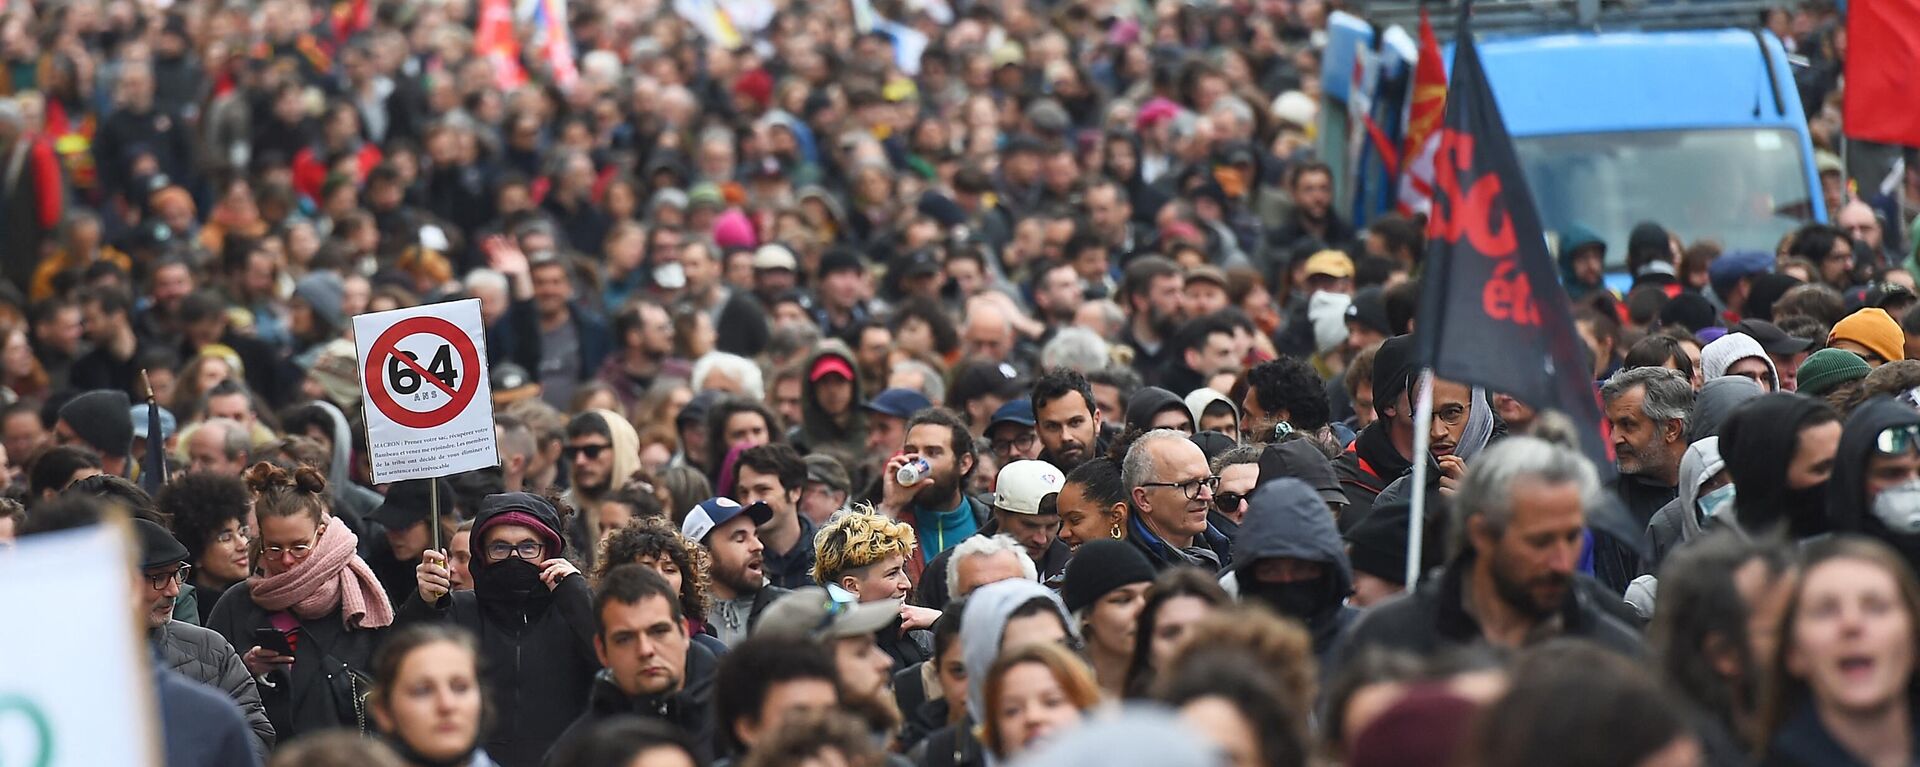 مئات الأشخاص يتظاهرون في باريس احتجاجا على مصادقة المجلس الدستوري على قانون إصلاح نظام التقاعد في فرنسا، 14 نيسان/ أبريل 2023  - سبوتنيك عربي, 1920, 14.04.2023